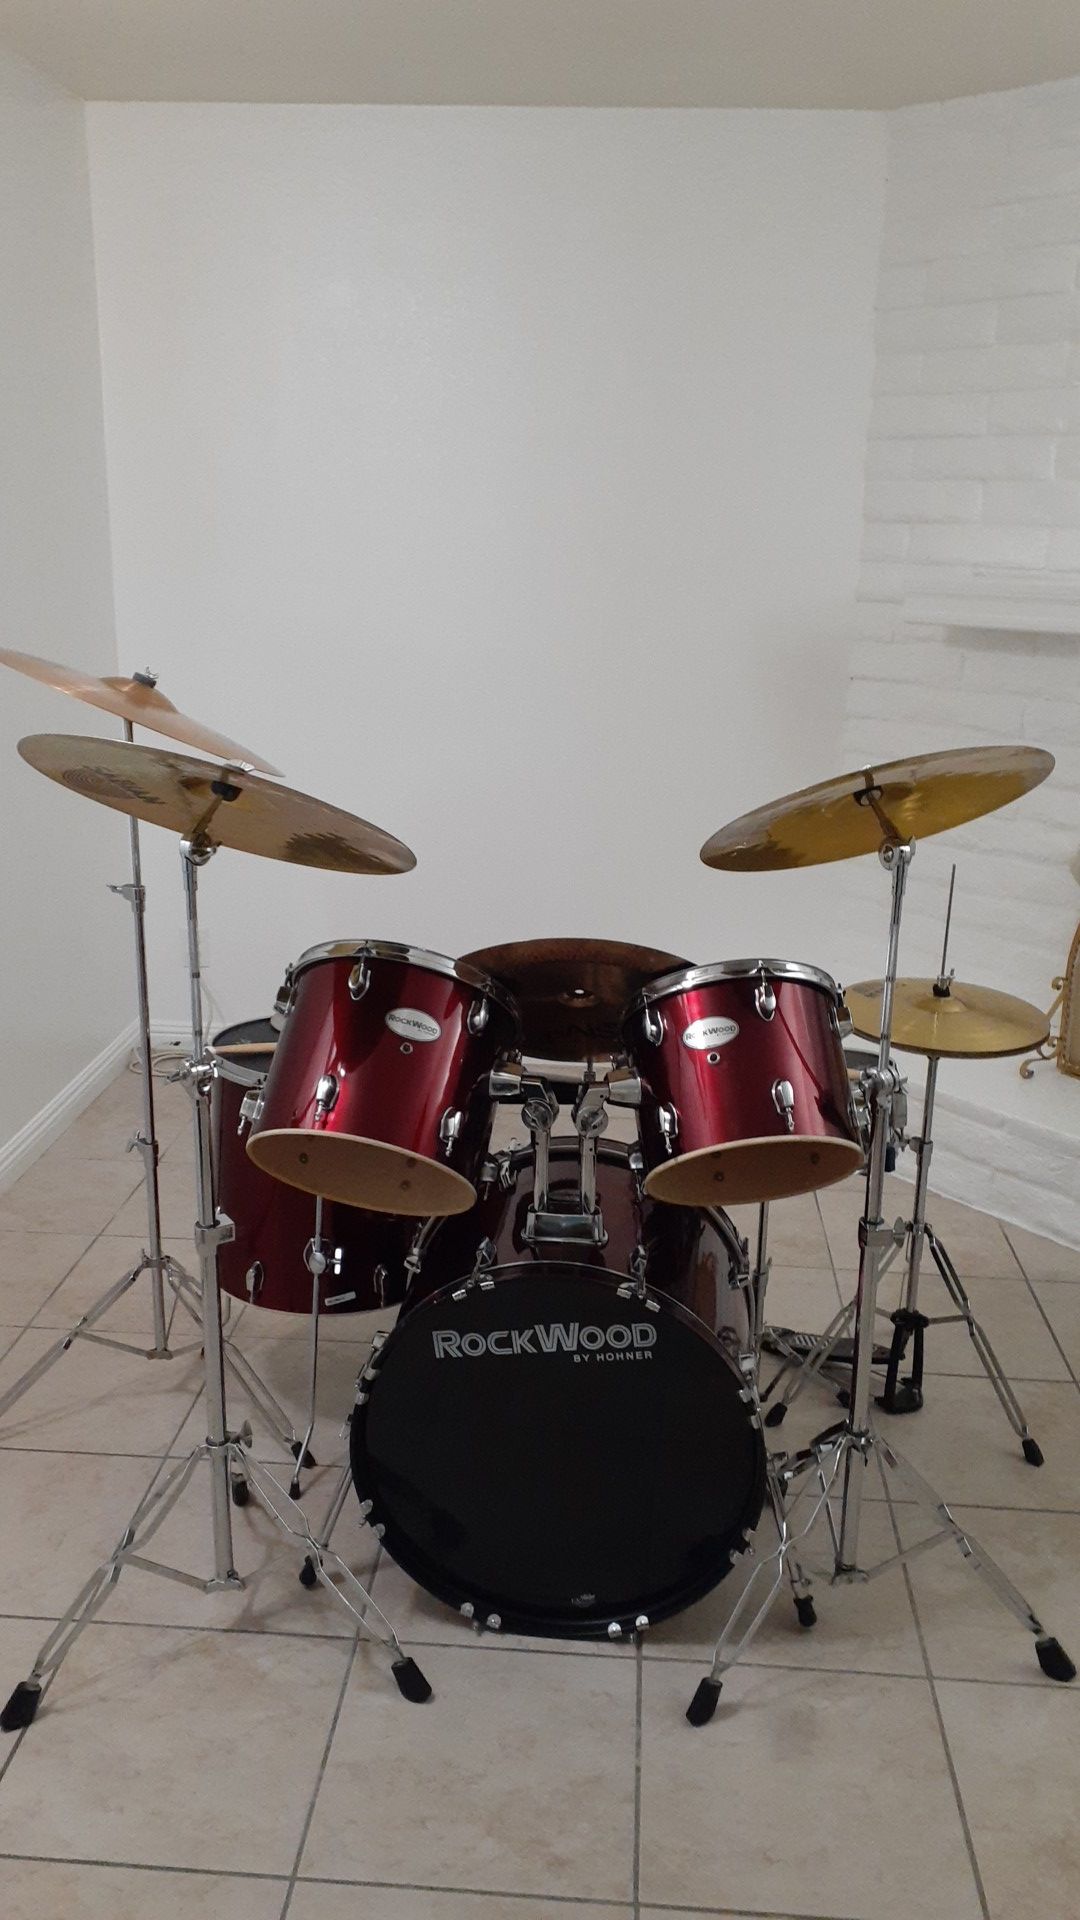 ROCKWOOD drums by HOHNER complete set